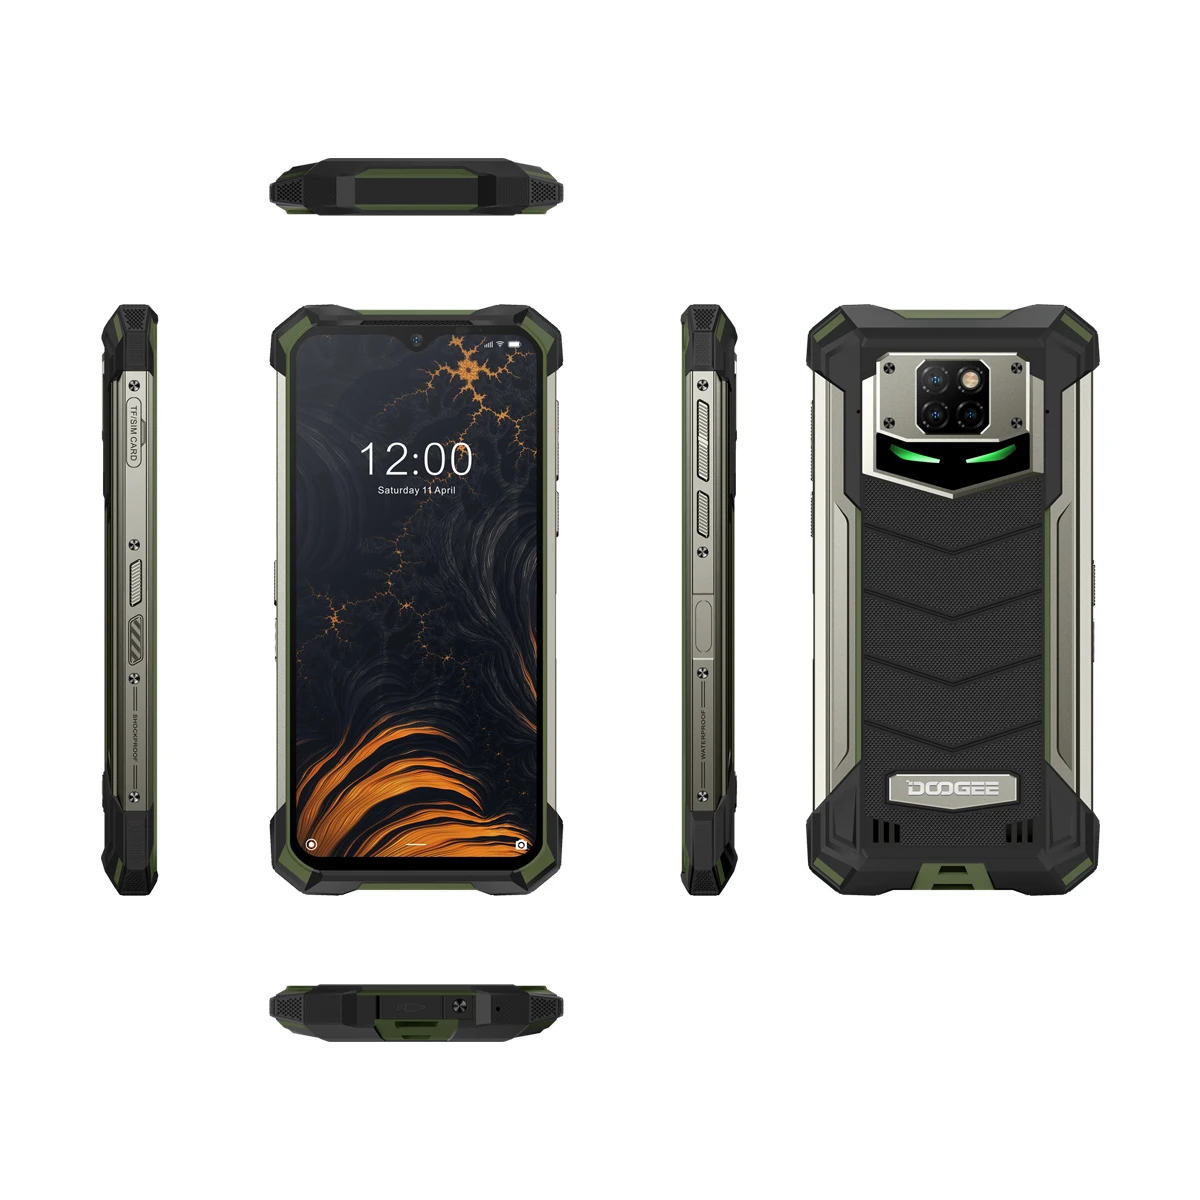 

Global Original S88Plus Explosion-proof 8GB+128 GB 6.3inch Waterproof Mobile Phone, Black / green/orange